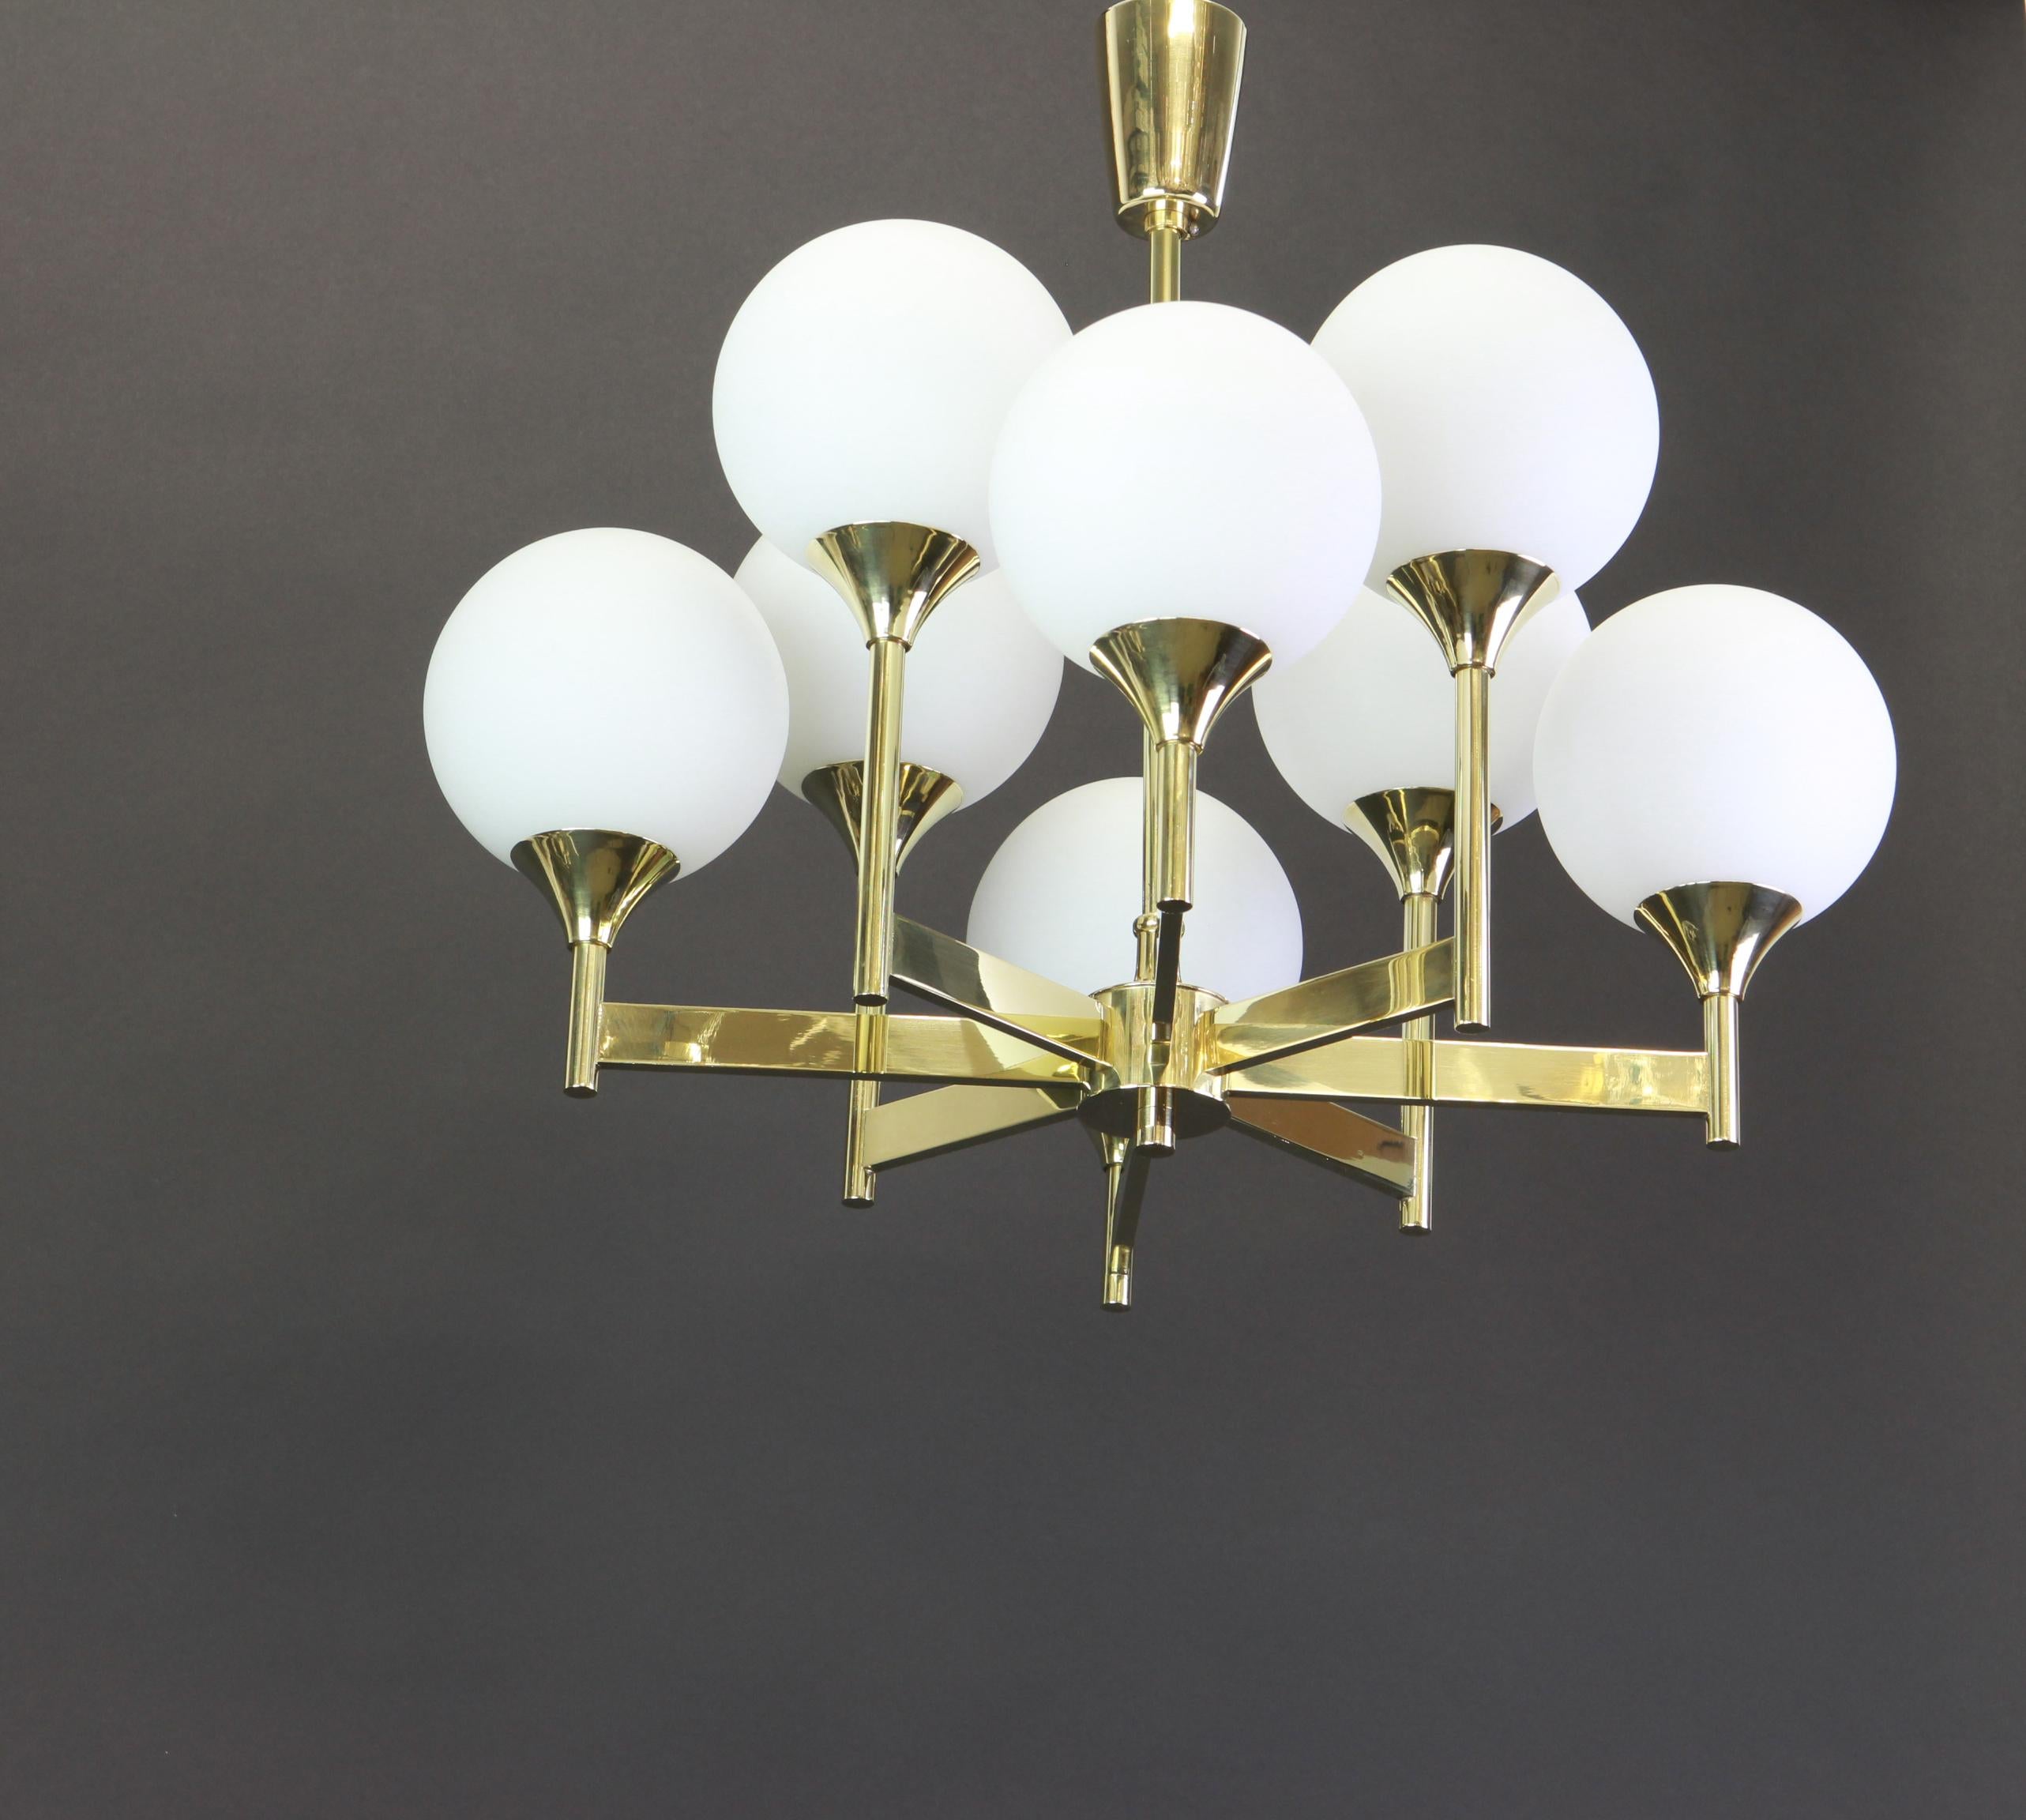 Wunderschöner Sputnik-Kronleuchter aus Messing mit acht Opalglaskugeln von Kaiser Leuchten, Deutschland, 1960er Jahre.

Schwere Qualität und in sehr gutem Zustand. Gereinigt, gut verkabelt und einsatzbereit. 

Die Leuchte benötigt acht kleine